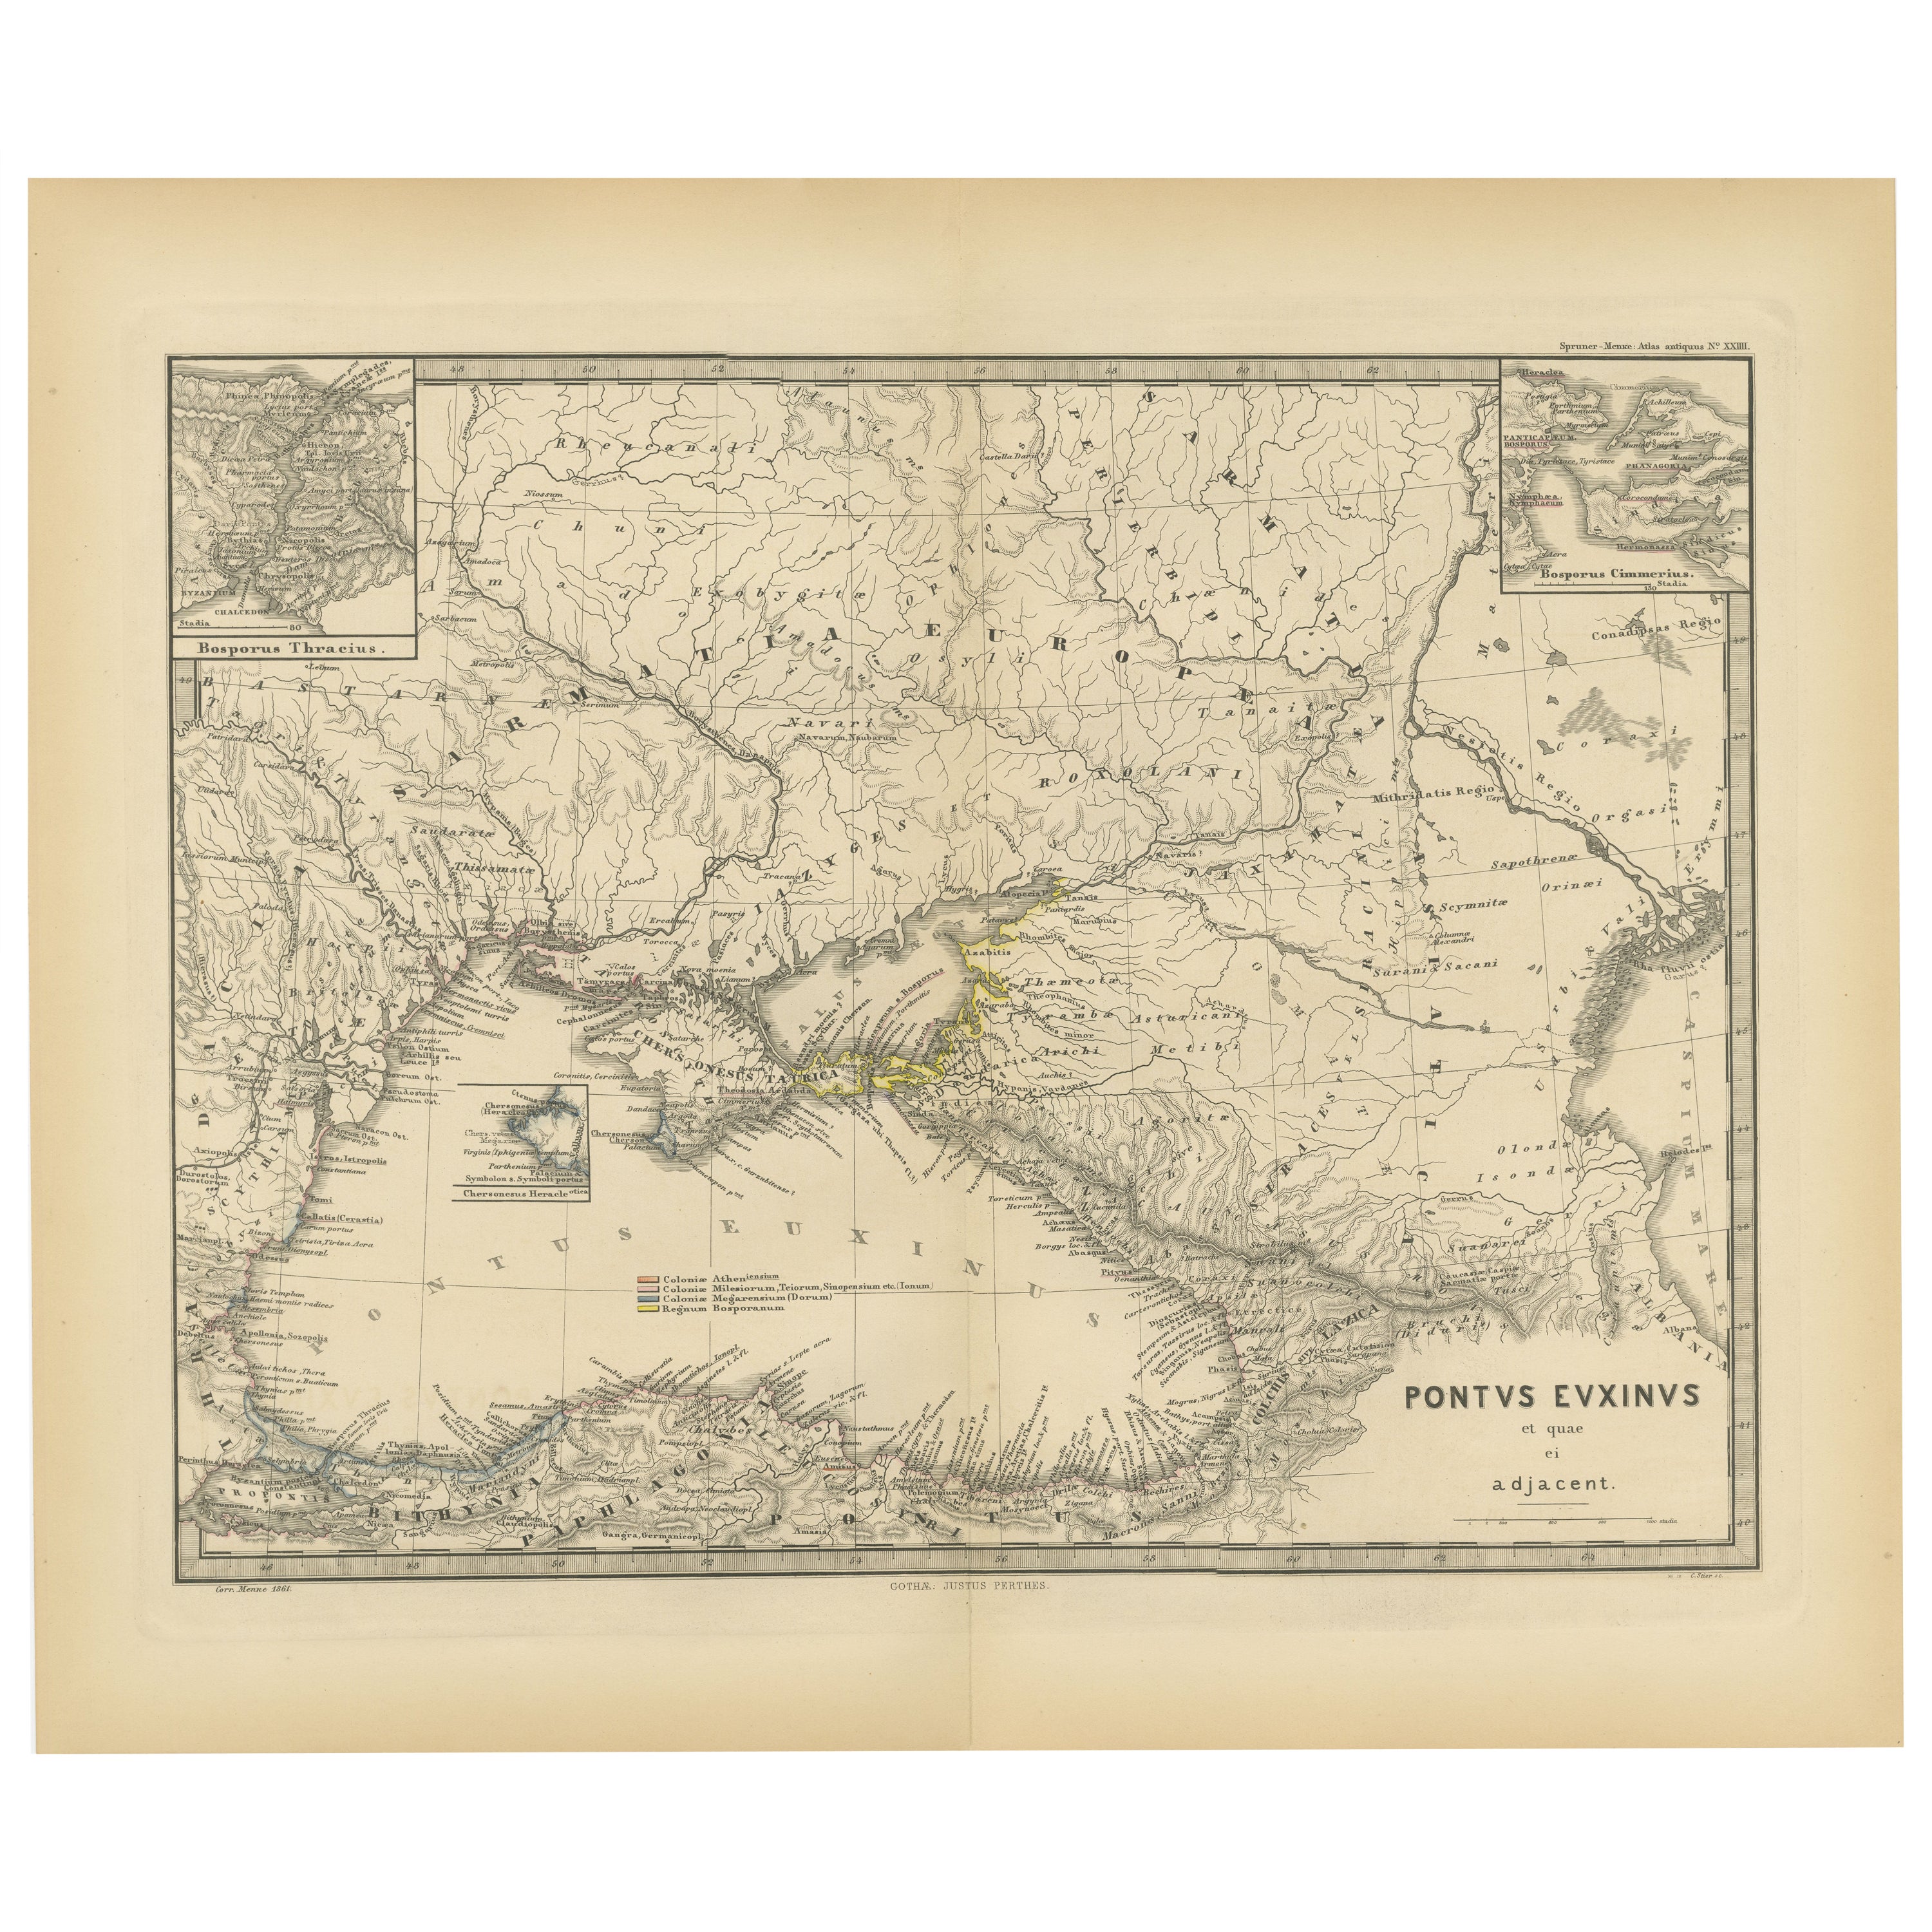 Schwarzes Meer in der Antike: Pontus Euxinus-Karte, veröffentlicht 1880